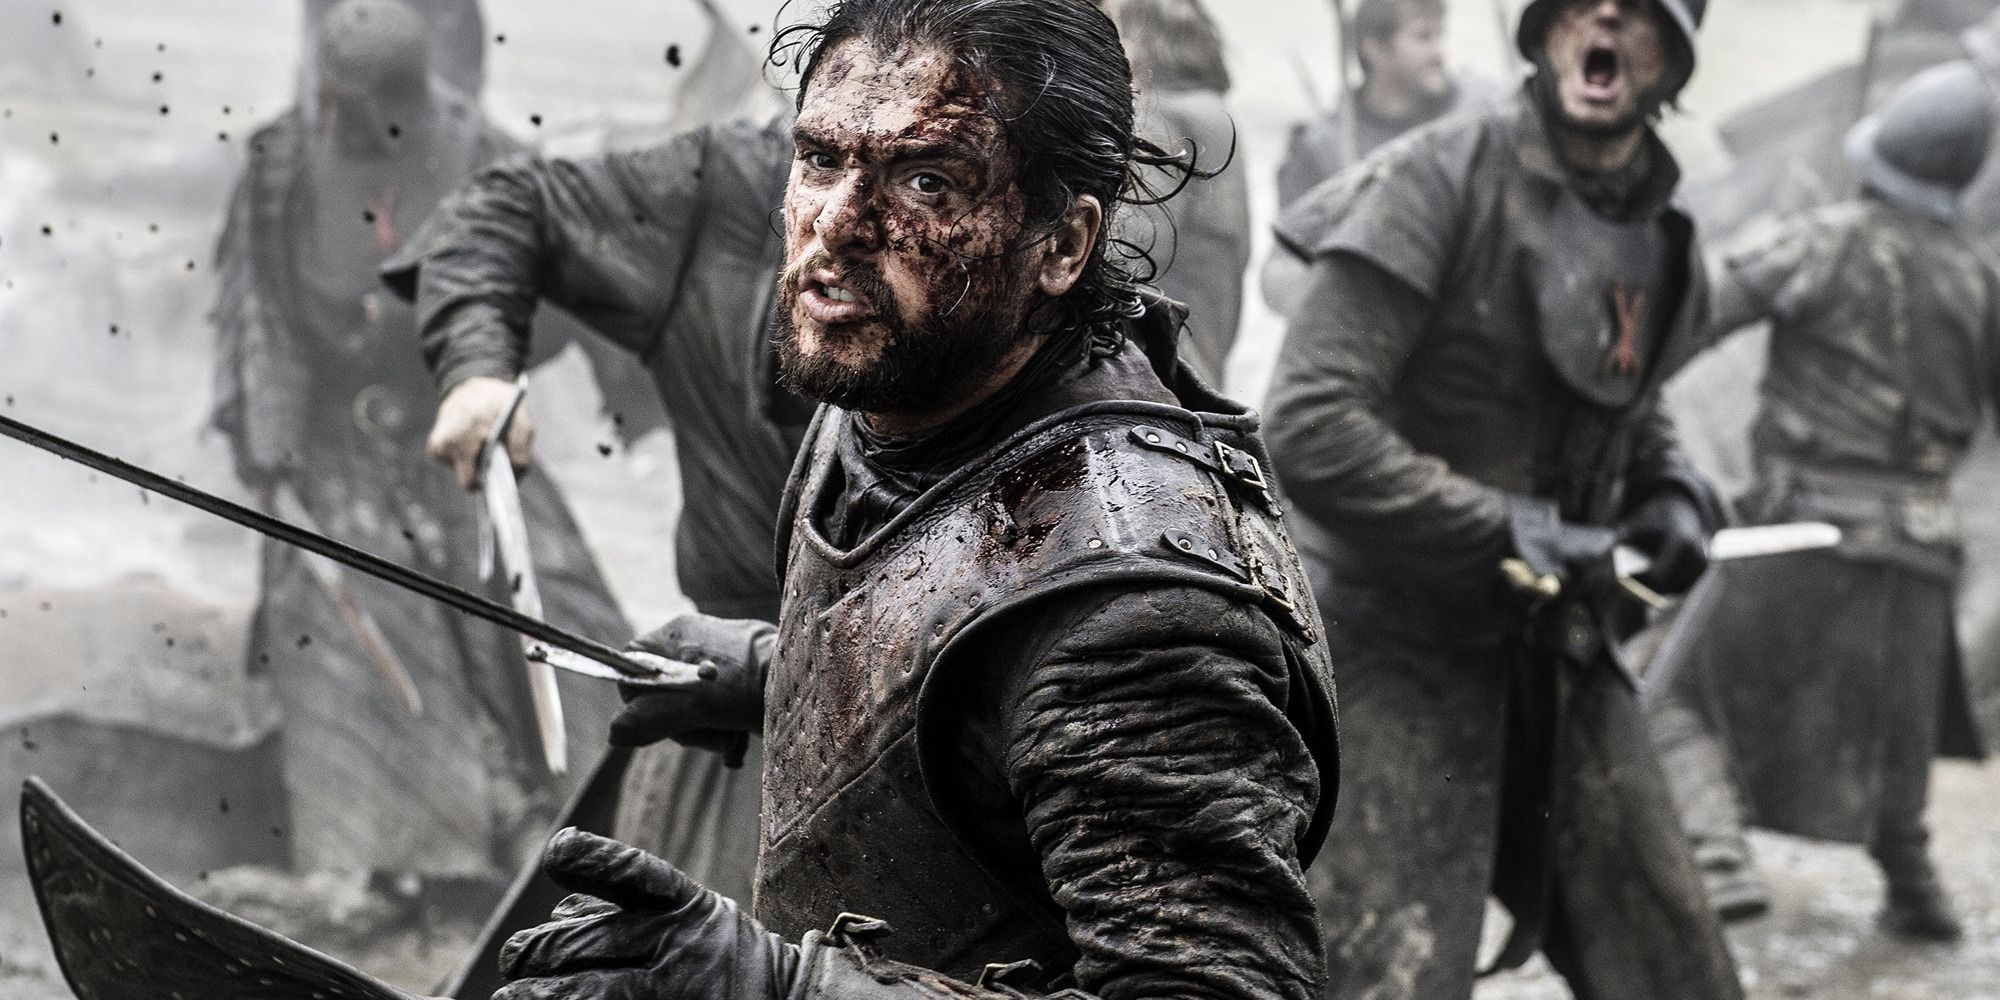 Jon Snow na Batalha dos Bastardos, olhos vermelhos e espada na mão